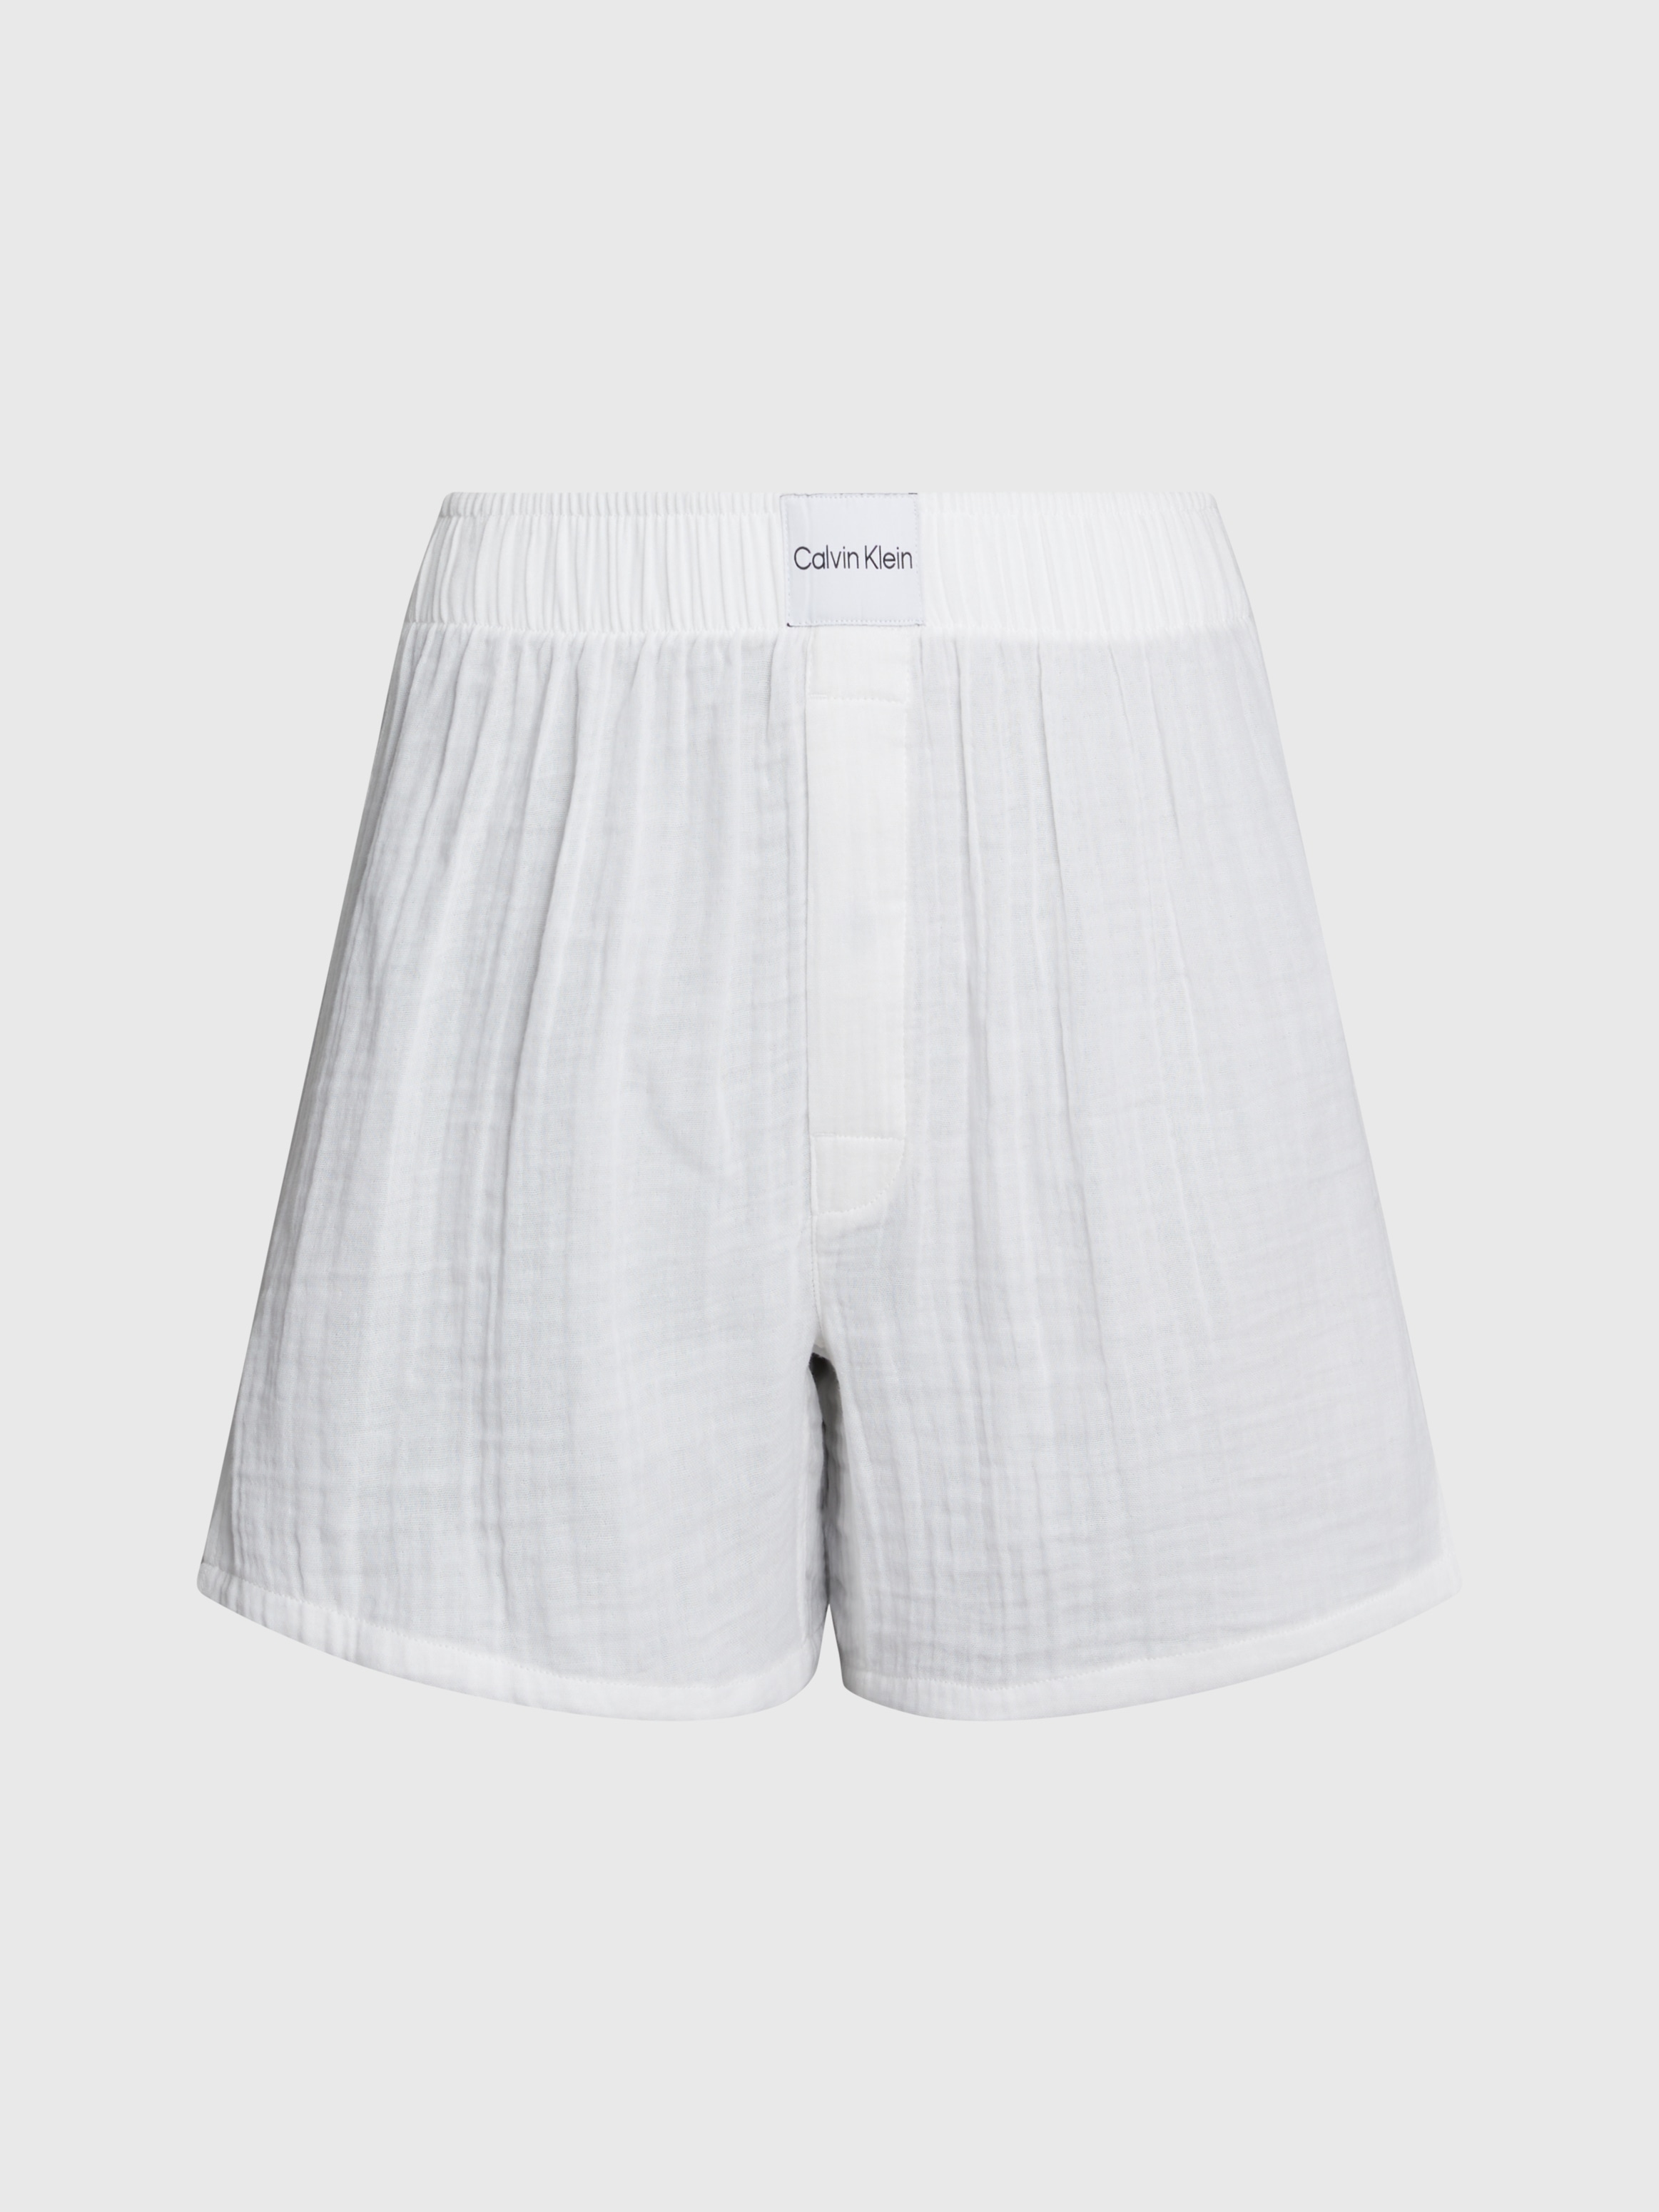 Calvin Klein Underwear Schlafshorts »BOXER SLIM«, mit Markenlabel auf dem Bund